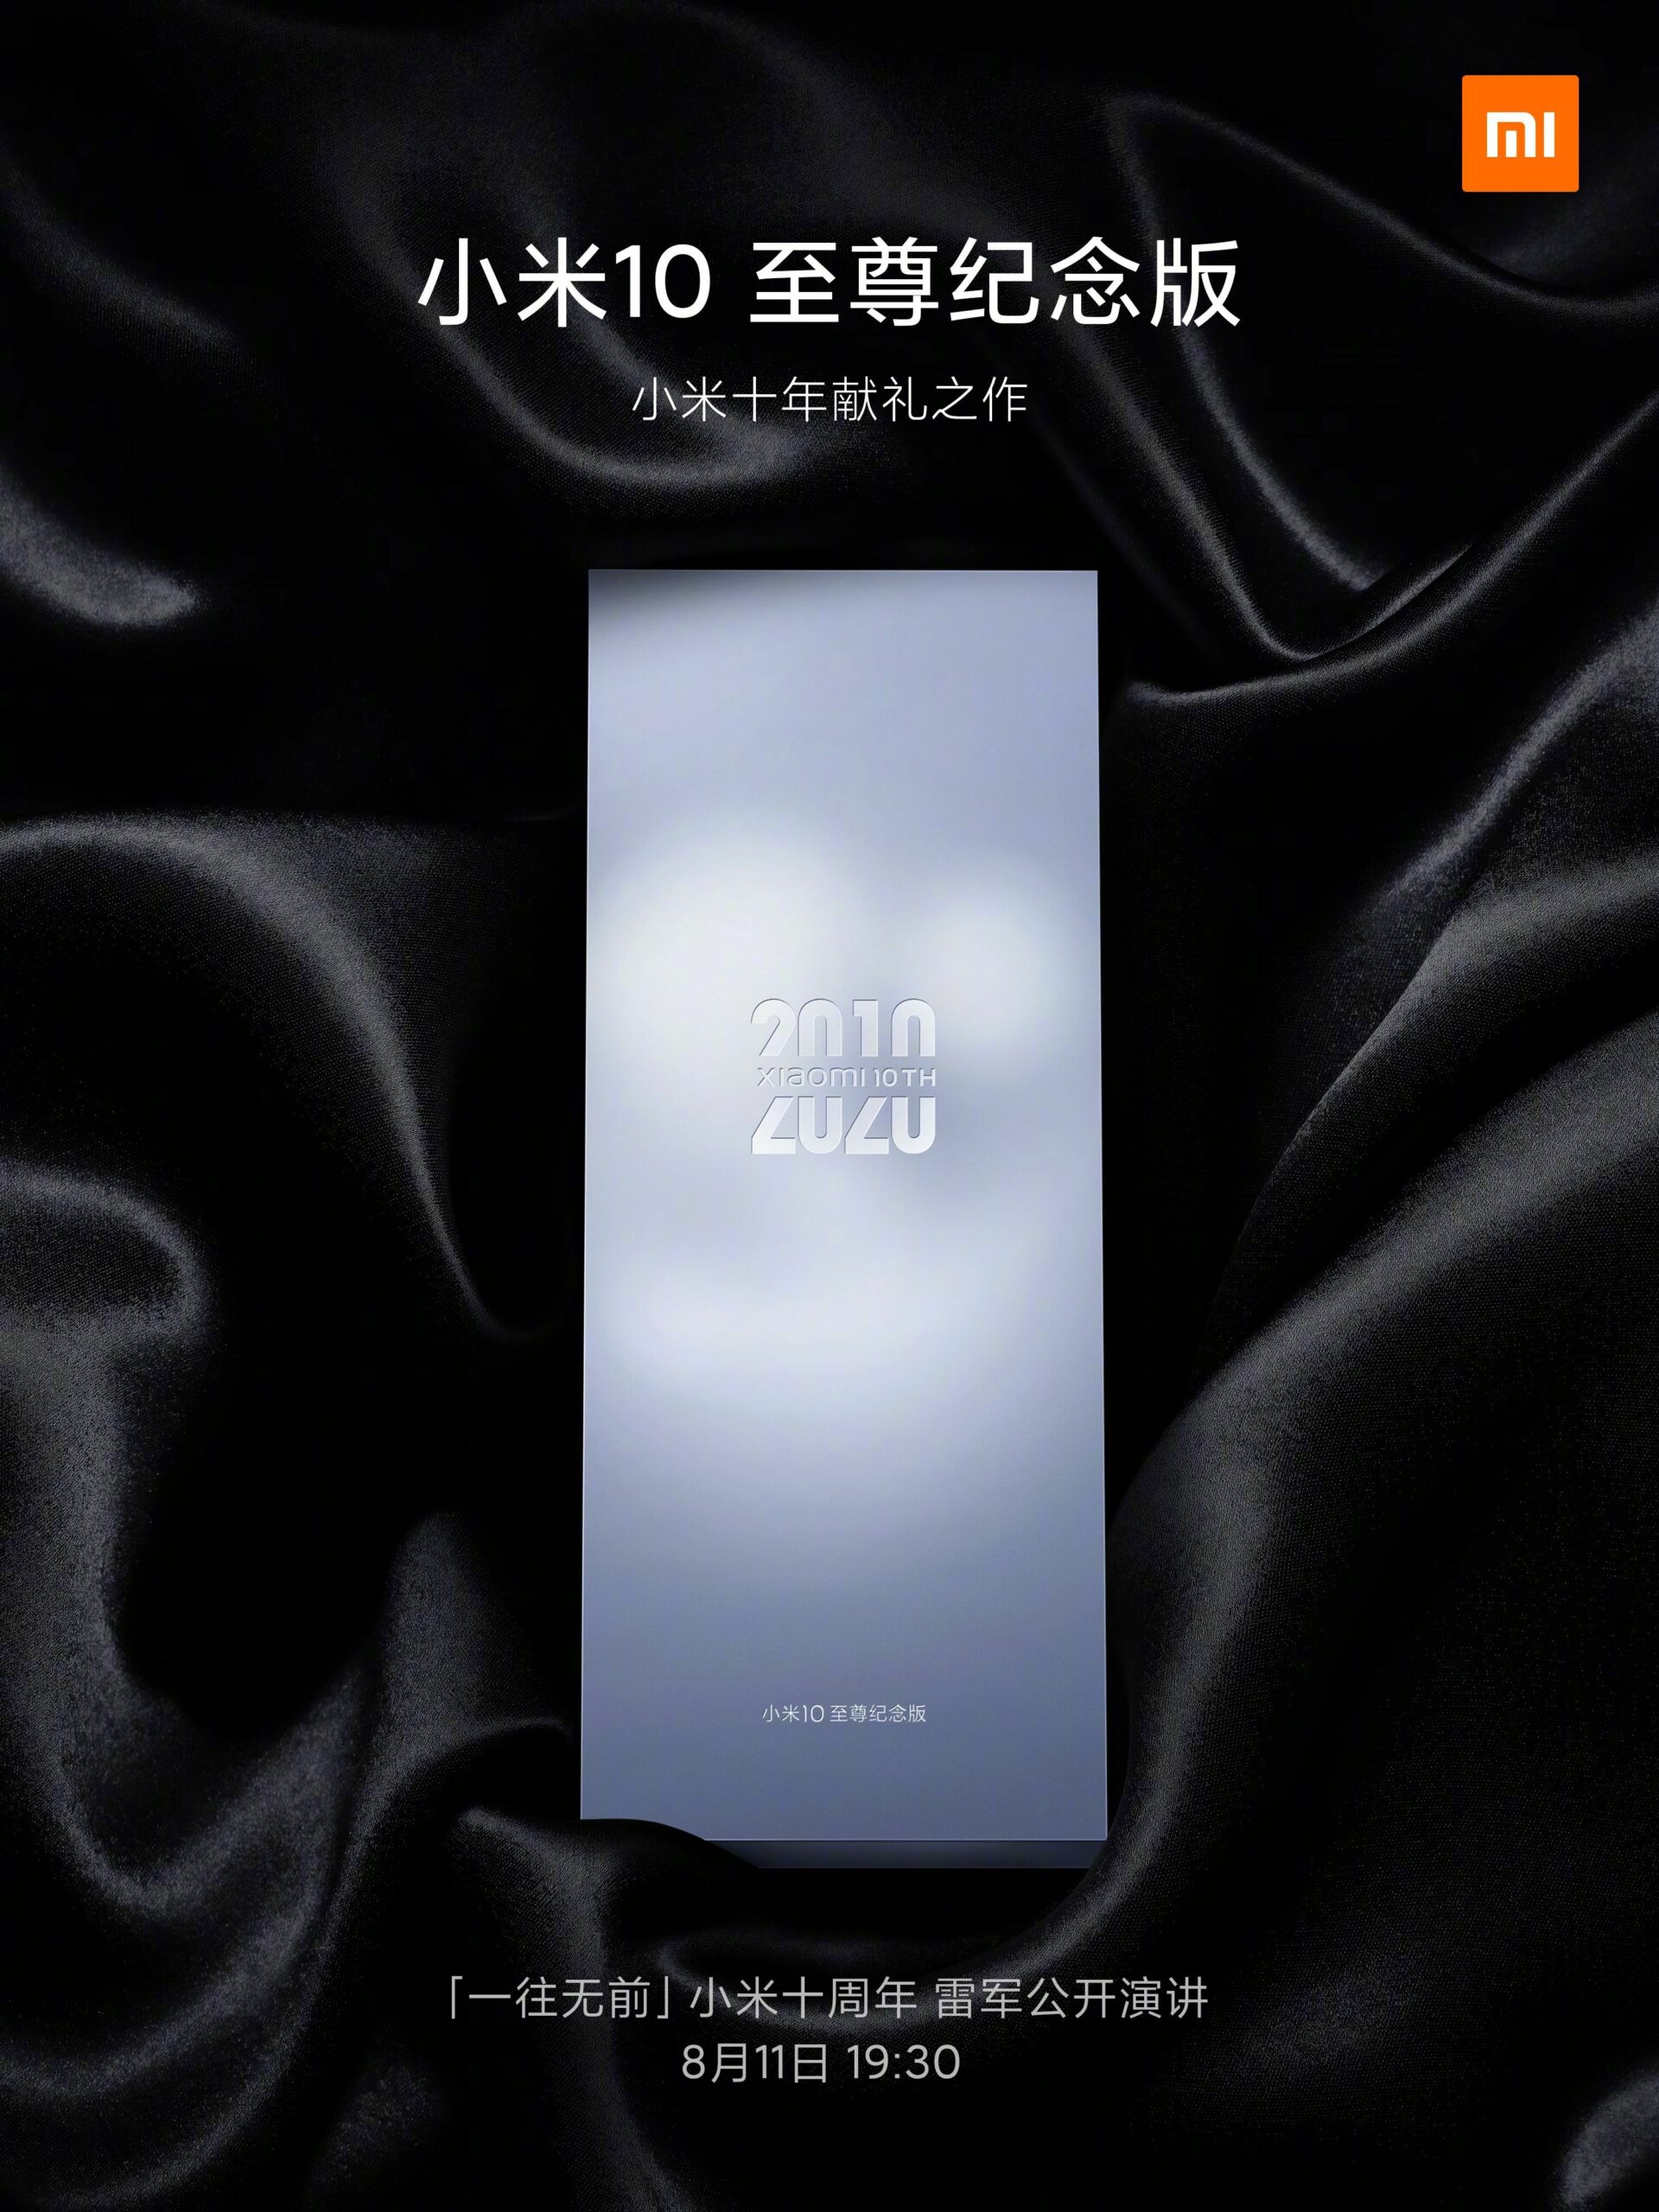 Spuštění pamětní edice Xiaomi Mi 10 Extreme 11. srpna